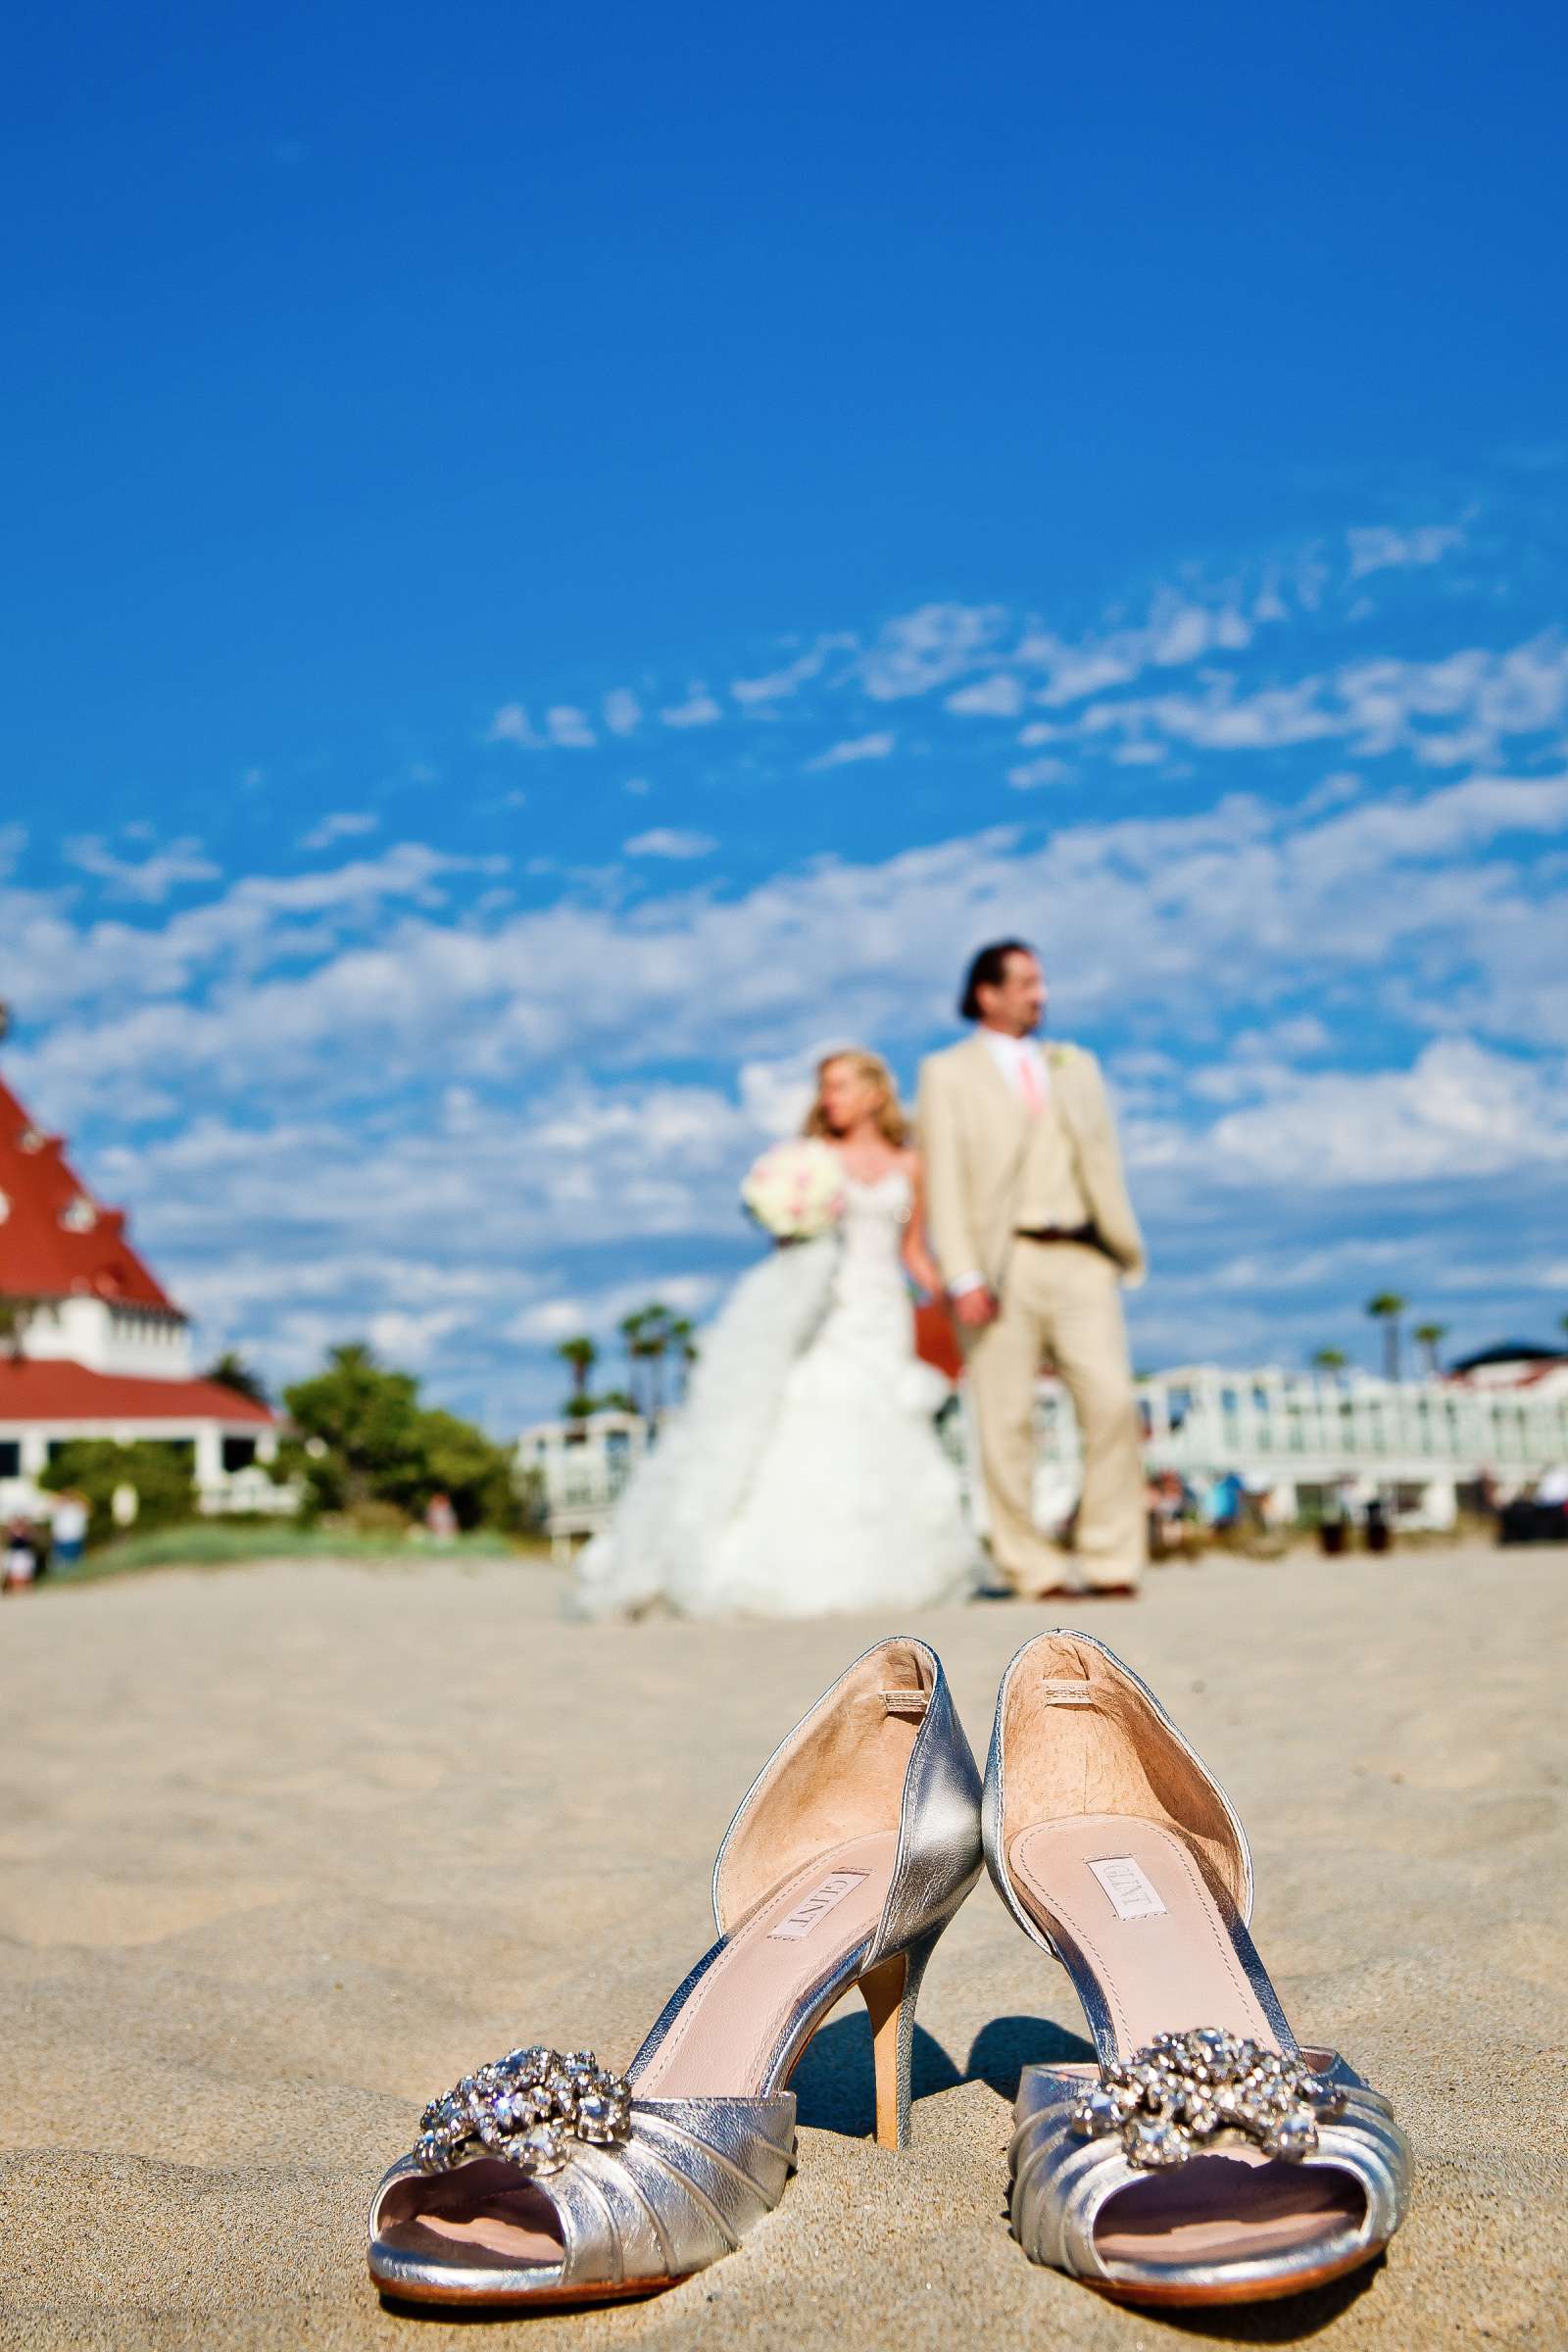 Hotel Del Coronado Wedding, Sarah and Tony Wedding Photo #323725 by True Photography